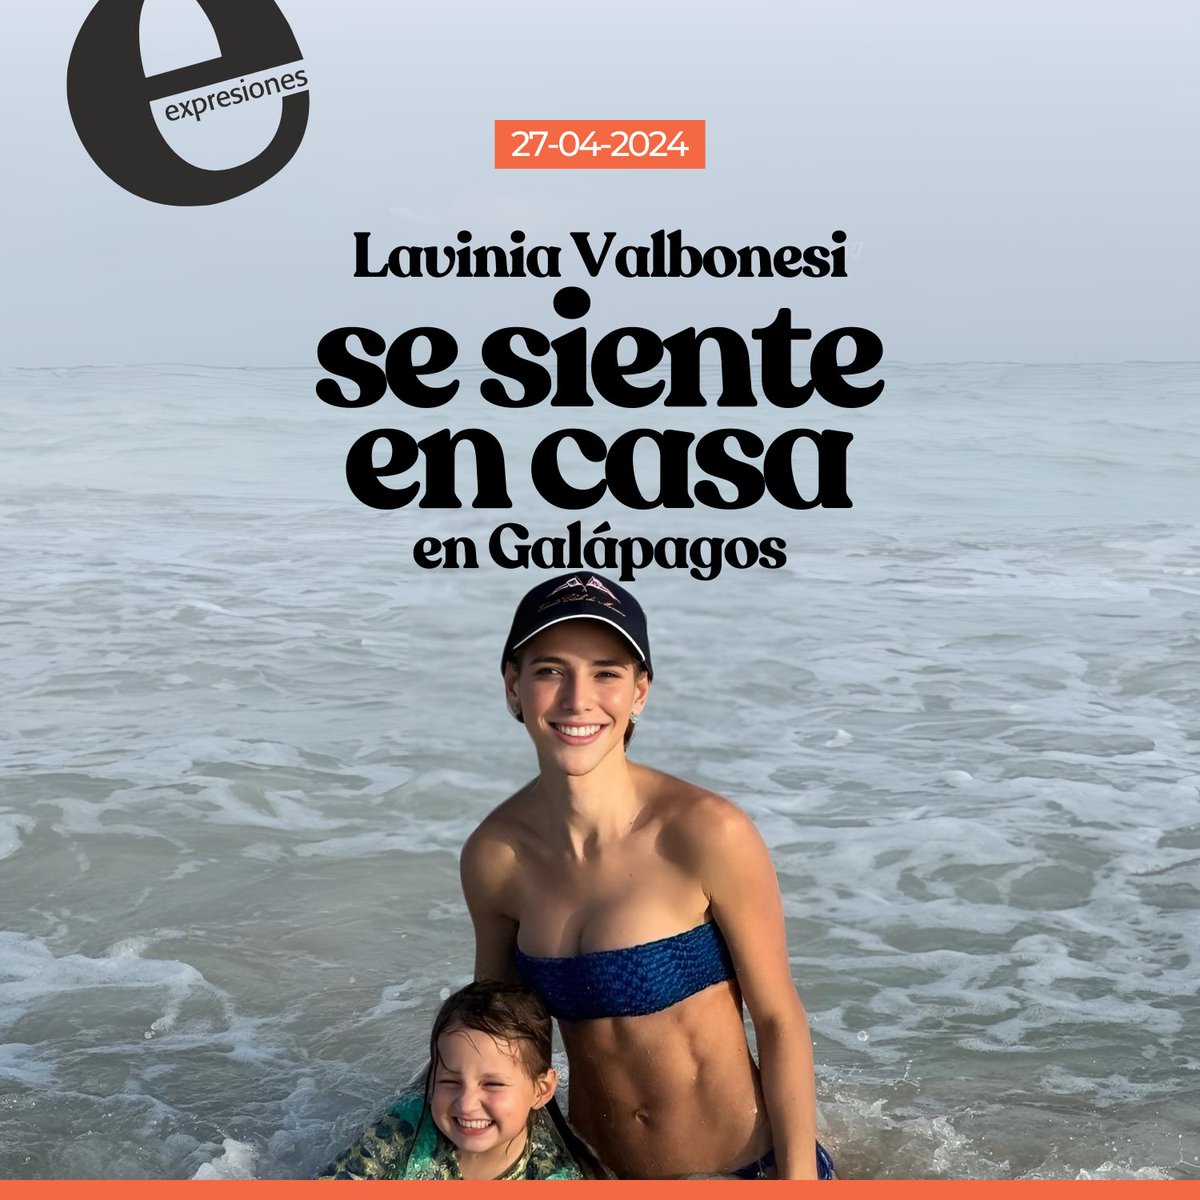 Qué Hpta 😱😱😱 y creo que Lavinia Valbonesi tiene como 3 meses de haber dado luz y tiene cuadritos en el abdomen y yo parezco al de la llanta Michelin 😅😅😅